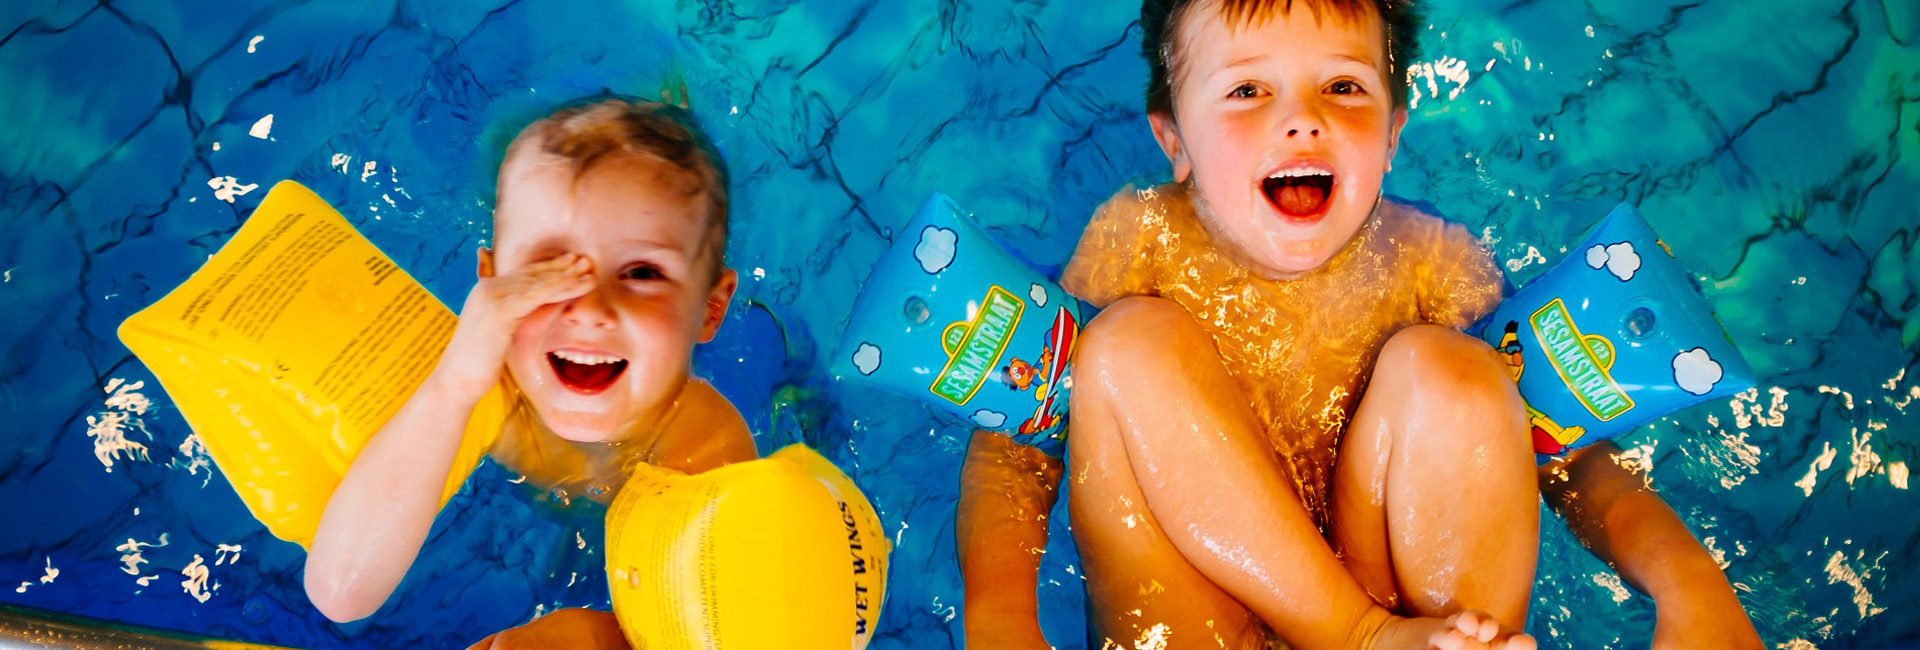 inground-swimming-pool-kids-fun